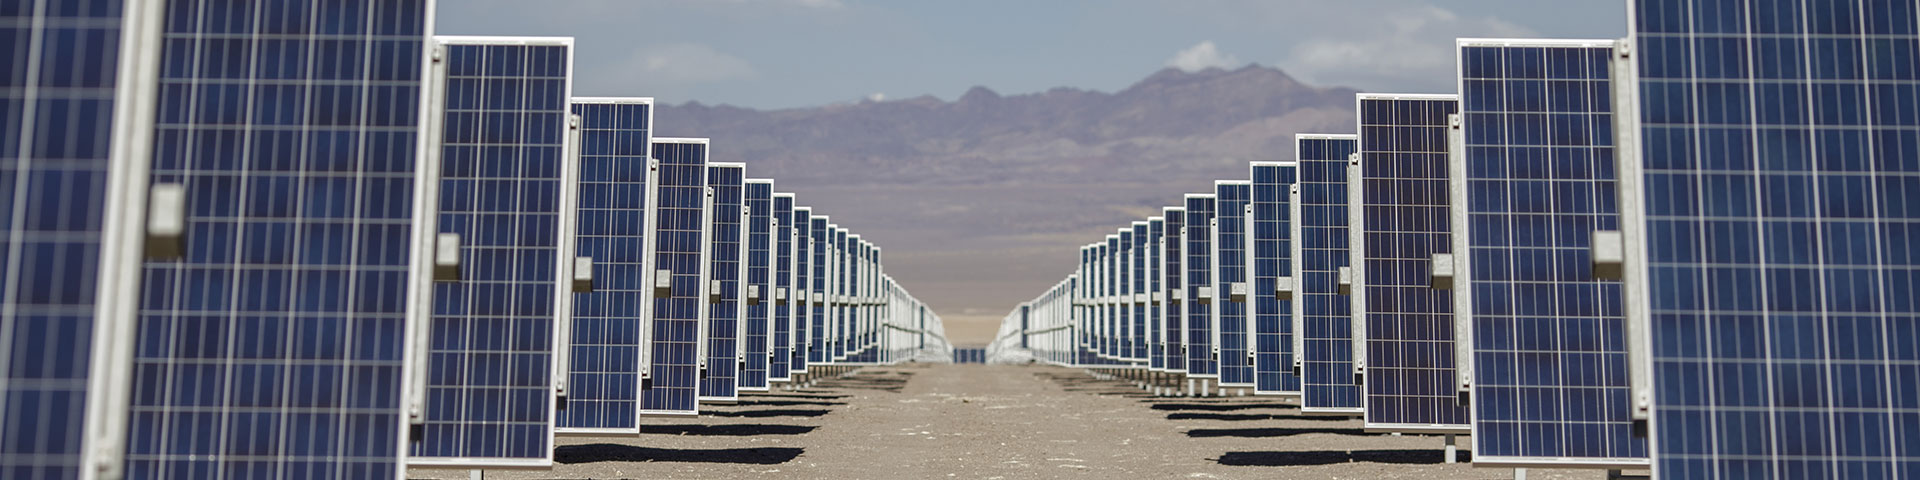 Zahlreiche Photovoltaik-Module stehen hintereinander in einem Solarpark. Copyright: GIZ